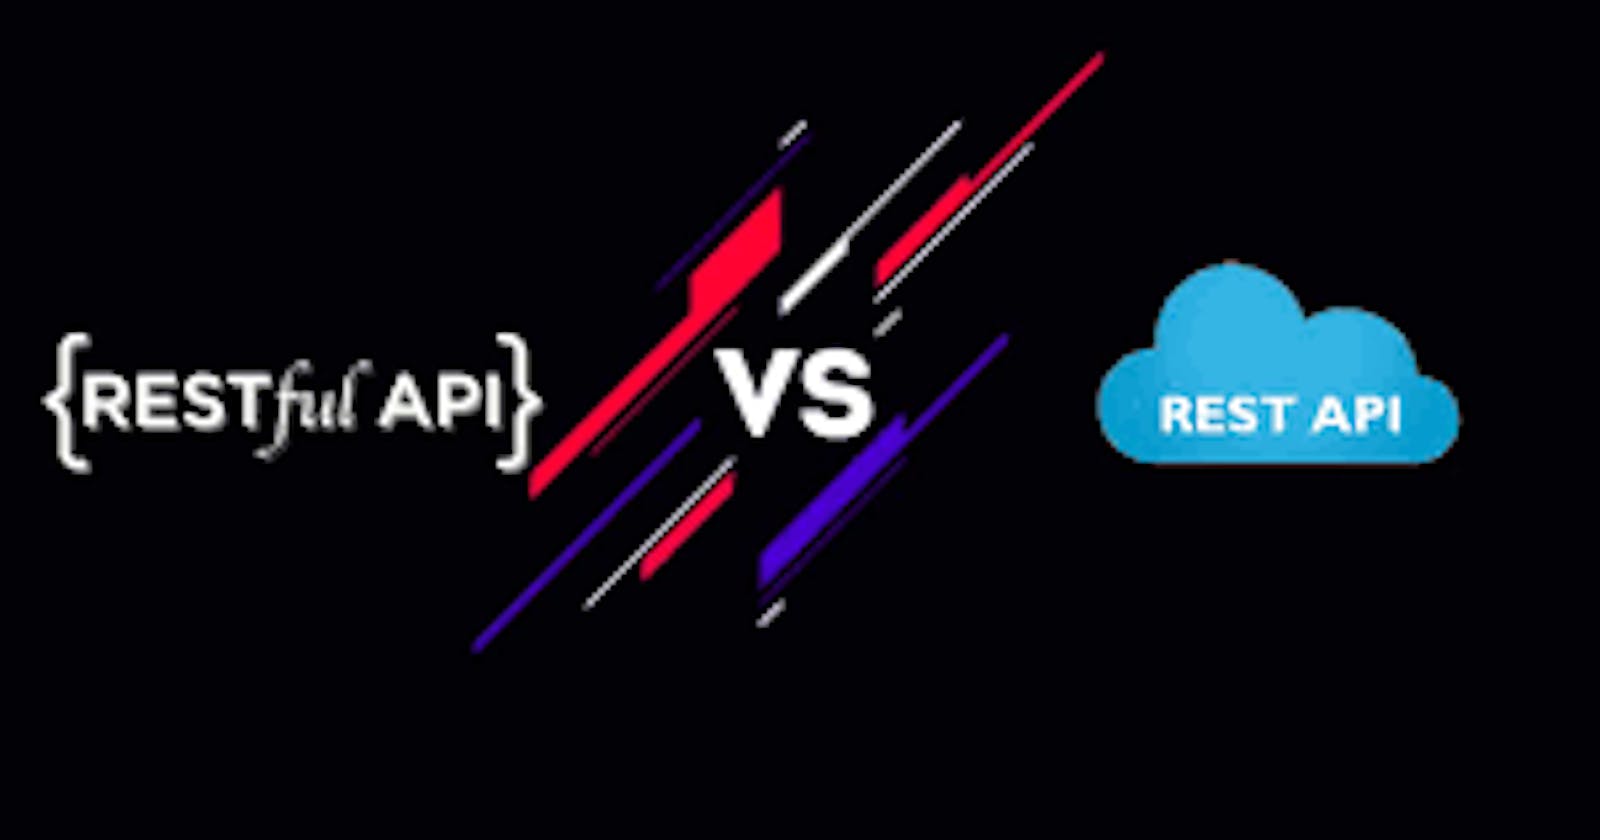 REST API vs RESTful API